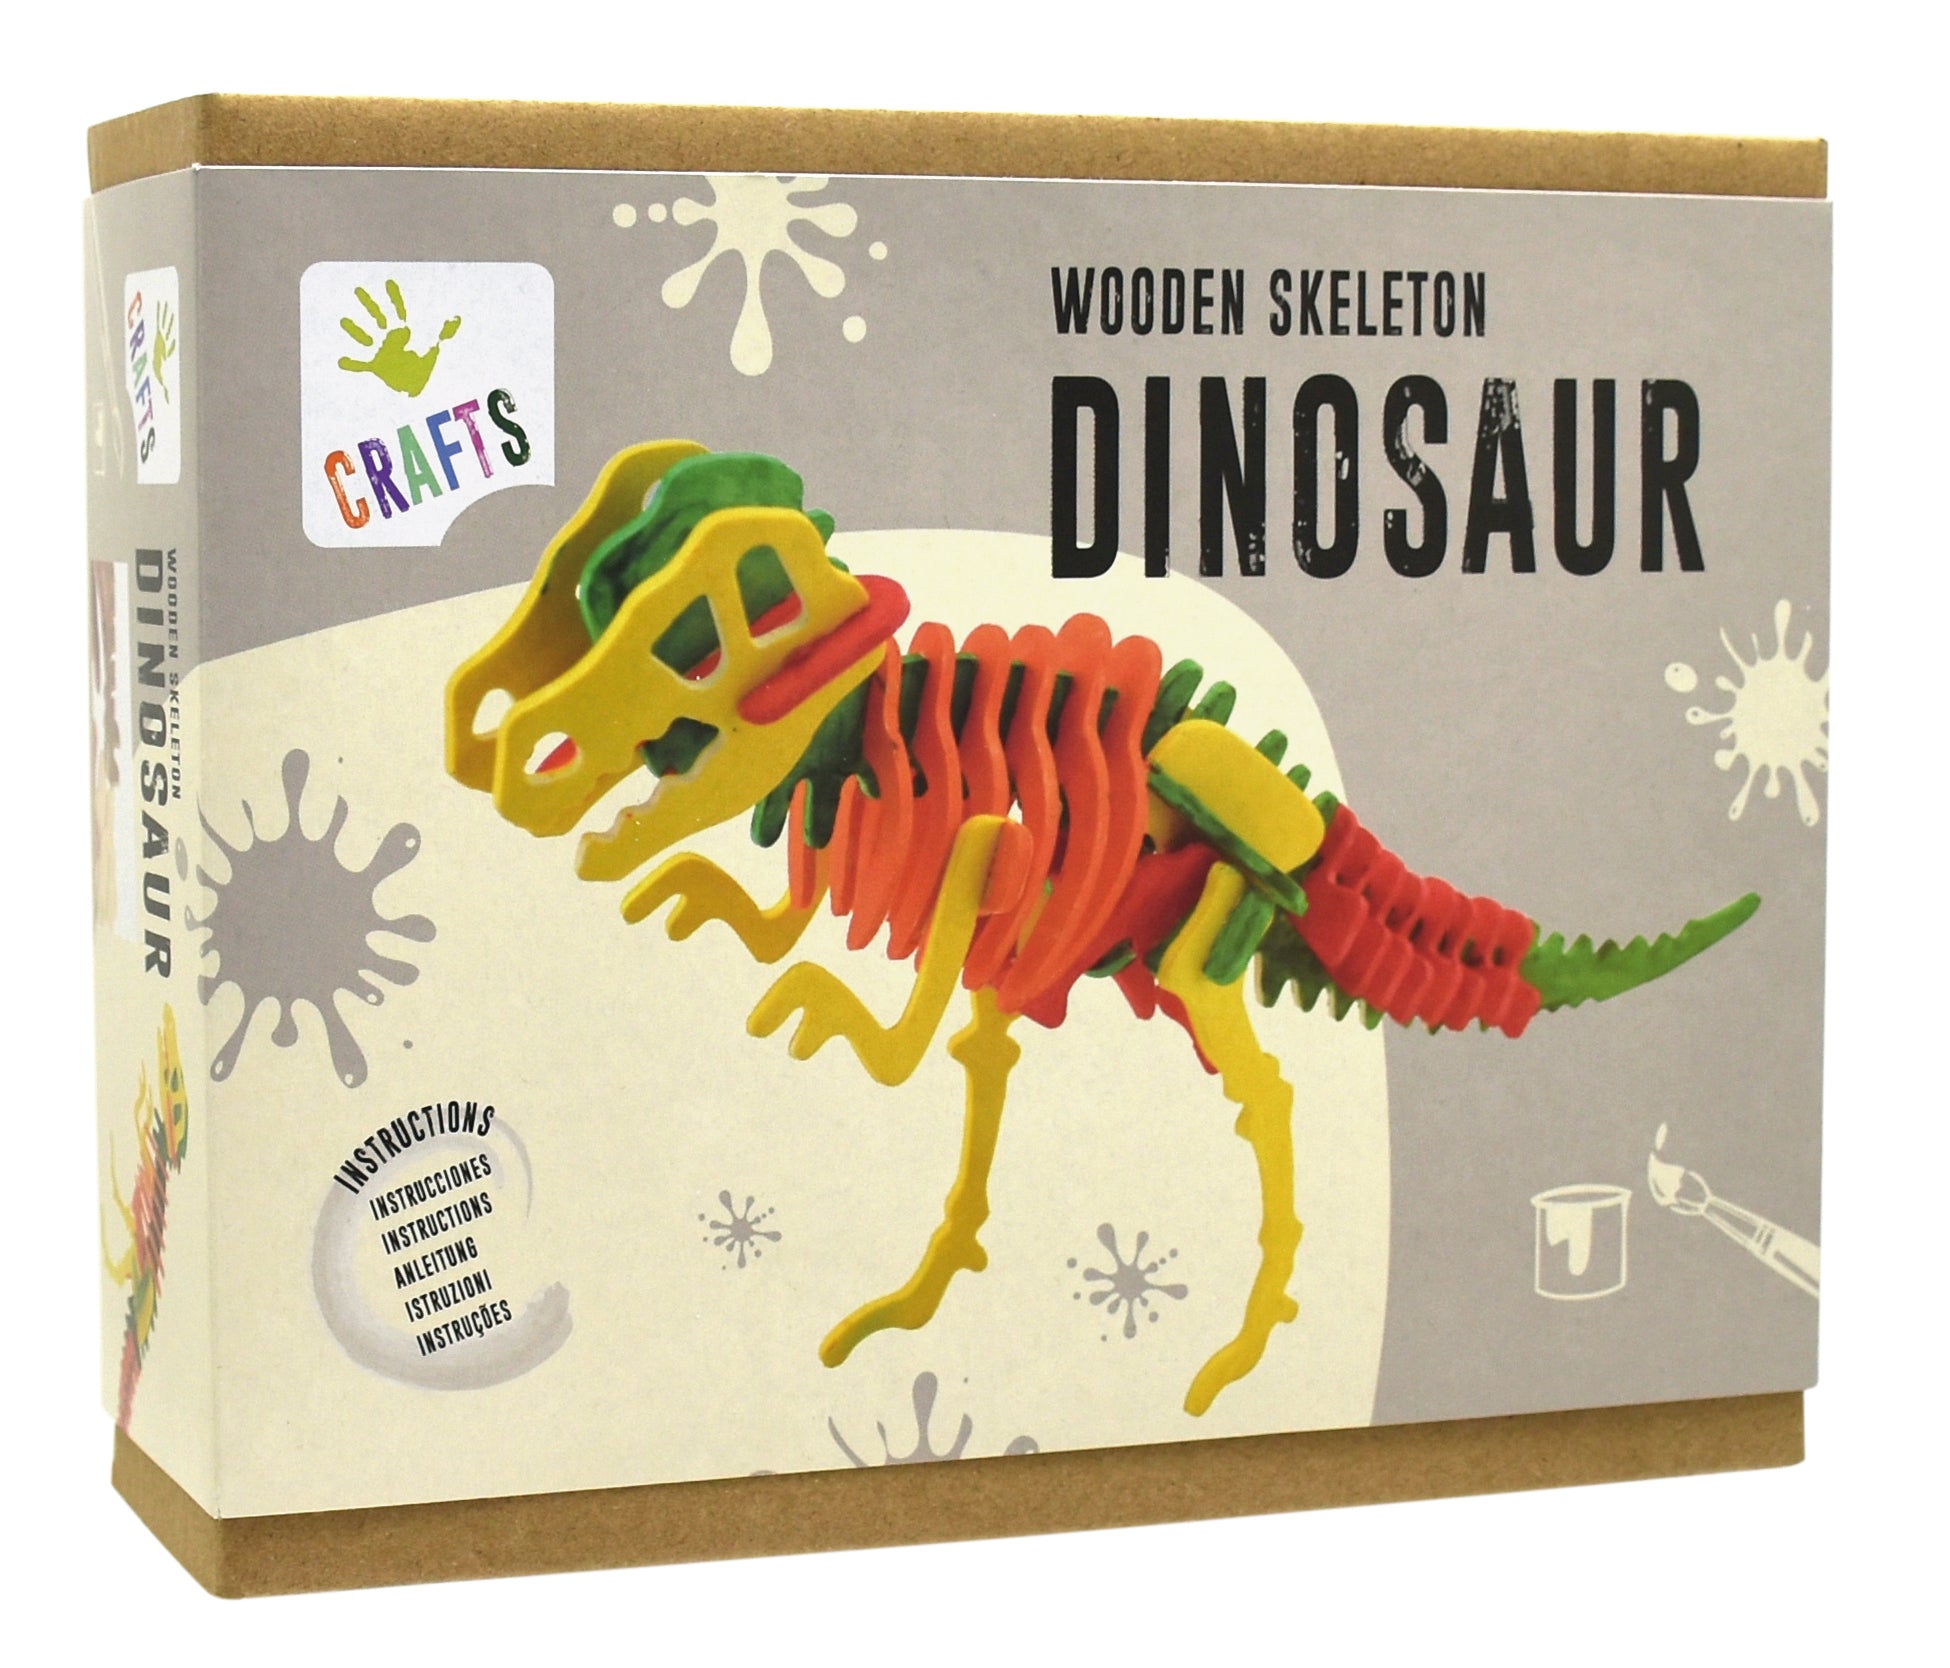 Wooden Skeleton Dinosaur - Craft toy.